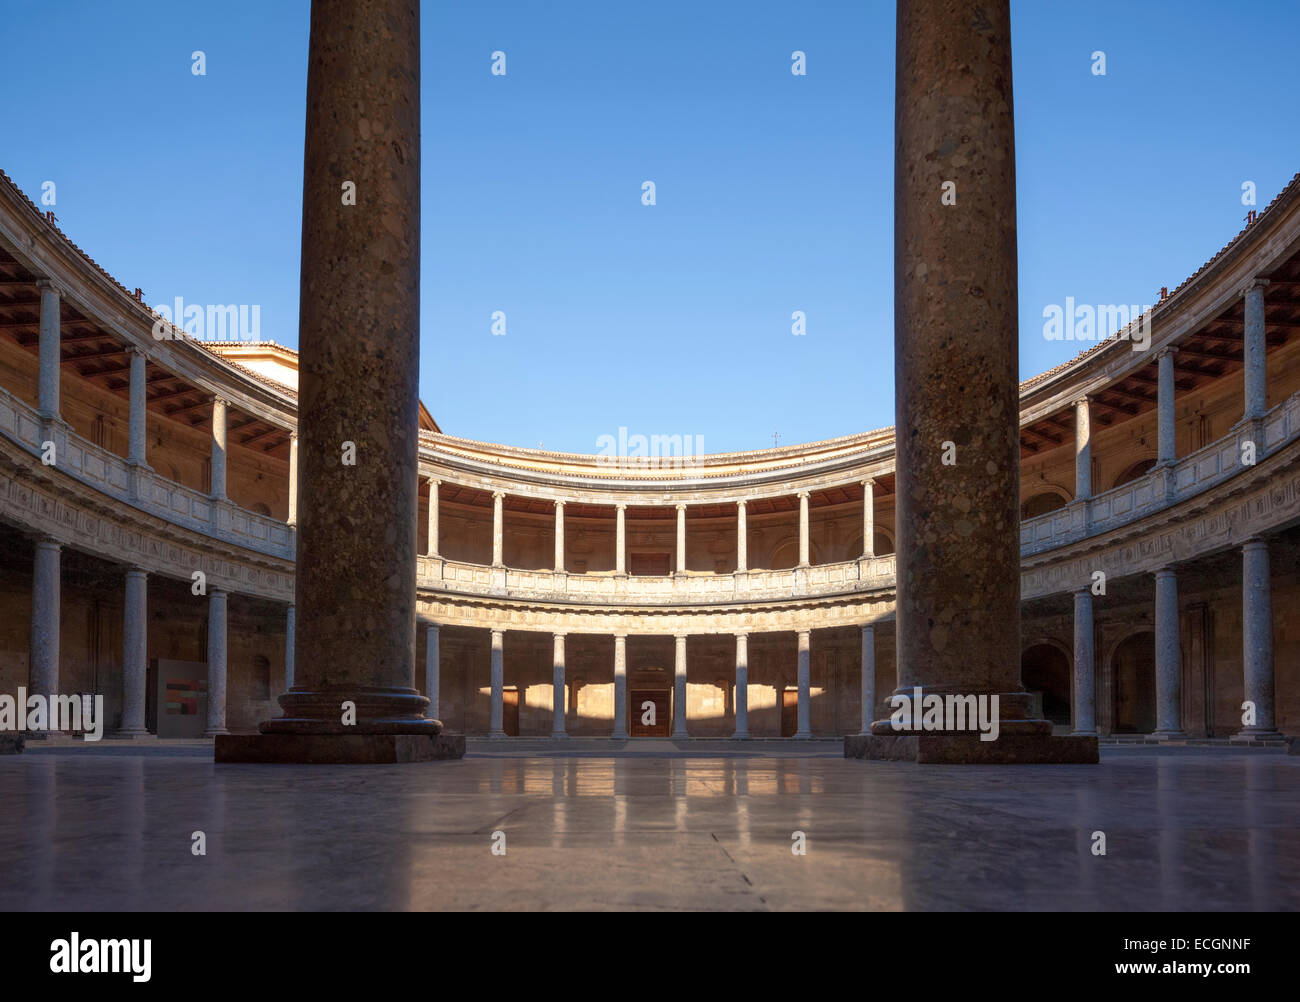 Palais Renaissance du saint empereur romain Charles V dans l'Alhambra Grenade Espagne. Palacio Carlos V. cour circulaire intérieur. Banque D'Images